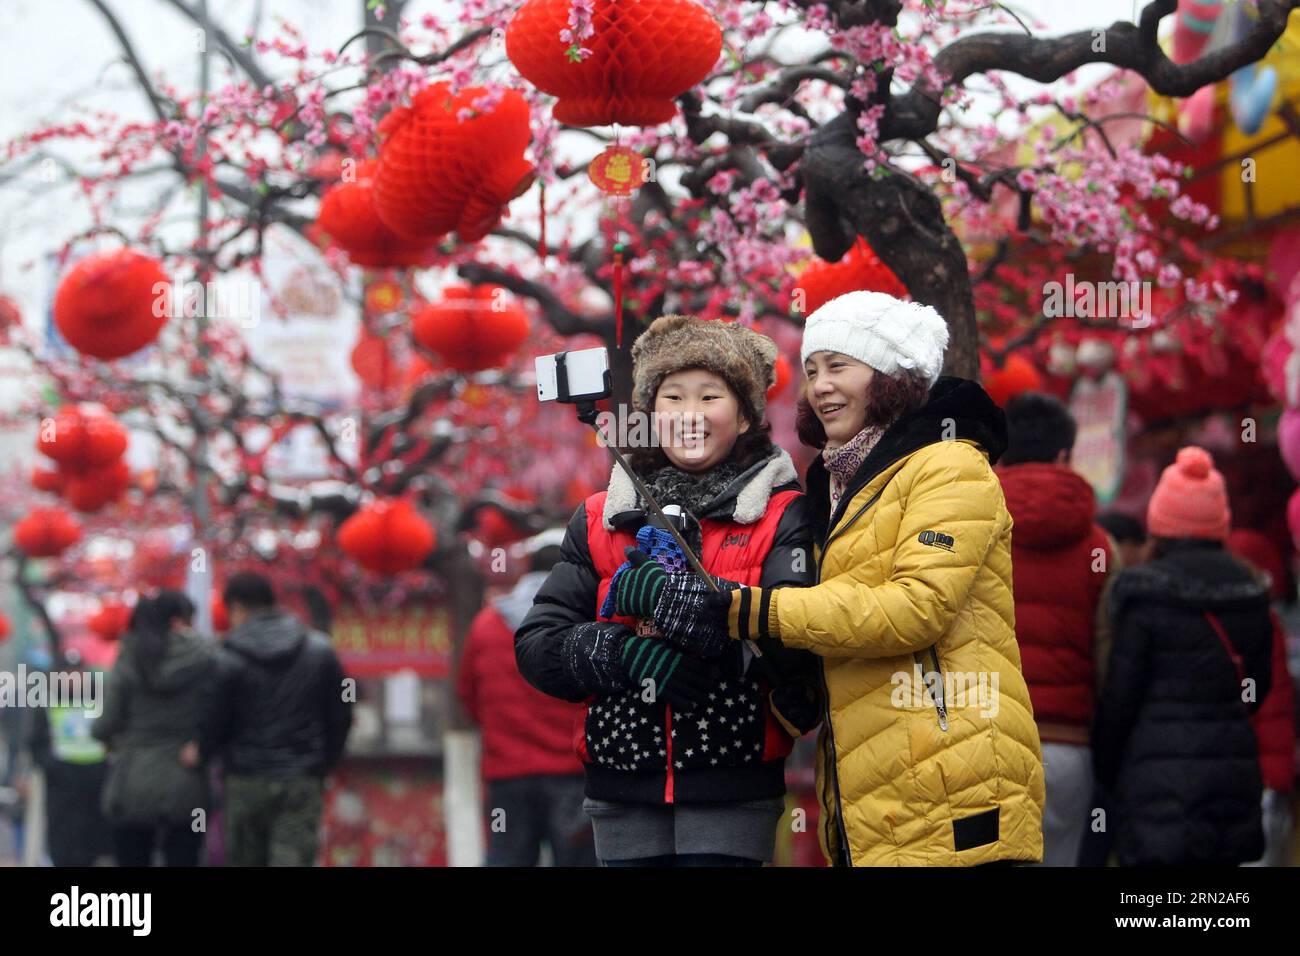 La gente fa selfie alla 32a fiera del tempio Longtanhu a Pechino, capitale della Cina, 21 febbraio 2015. I cinesi a livello nazionale partecipano a varie festività il sabato, il quarto giorno della festa di primavera di quest'anno. )(wjq) CHINA-SPRING FESTIVAL-ACTIVITY (CN) Yangxle PUBLICATIONxNOTxINxCHN Celebrities Take AT the 32nd Longtanhu Temple Fair in Beijing capitale della Cina 21 febbraio 2015 celebrità cinesi Nazione partecipare varie sabato IL quarto giorno del Festival di primavera di quest'anno Festa di primavera Cina attività Festival di primavera CN PUBLICATIONxNOTxINxCHN Foto Stock